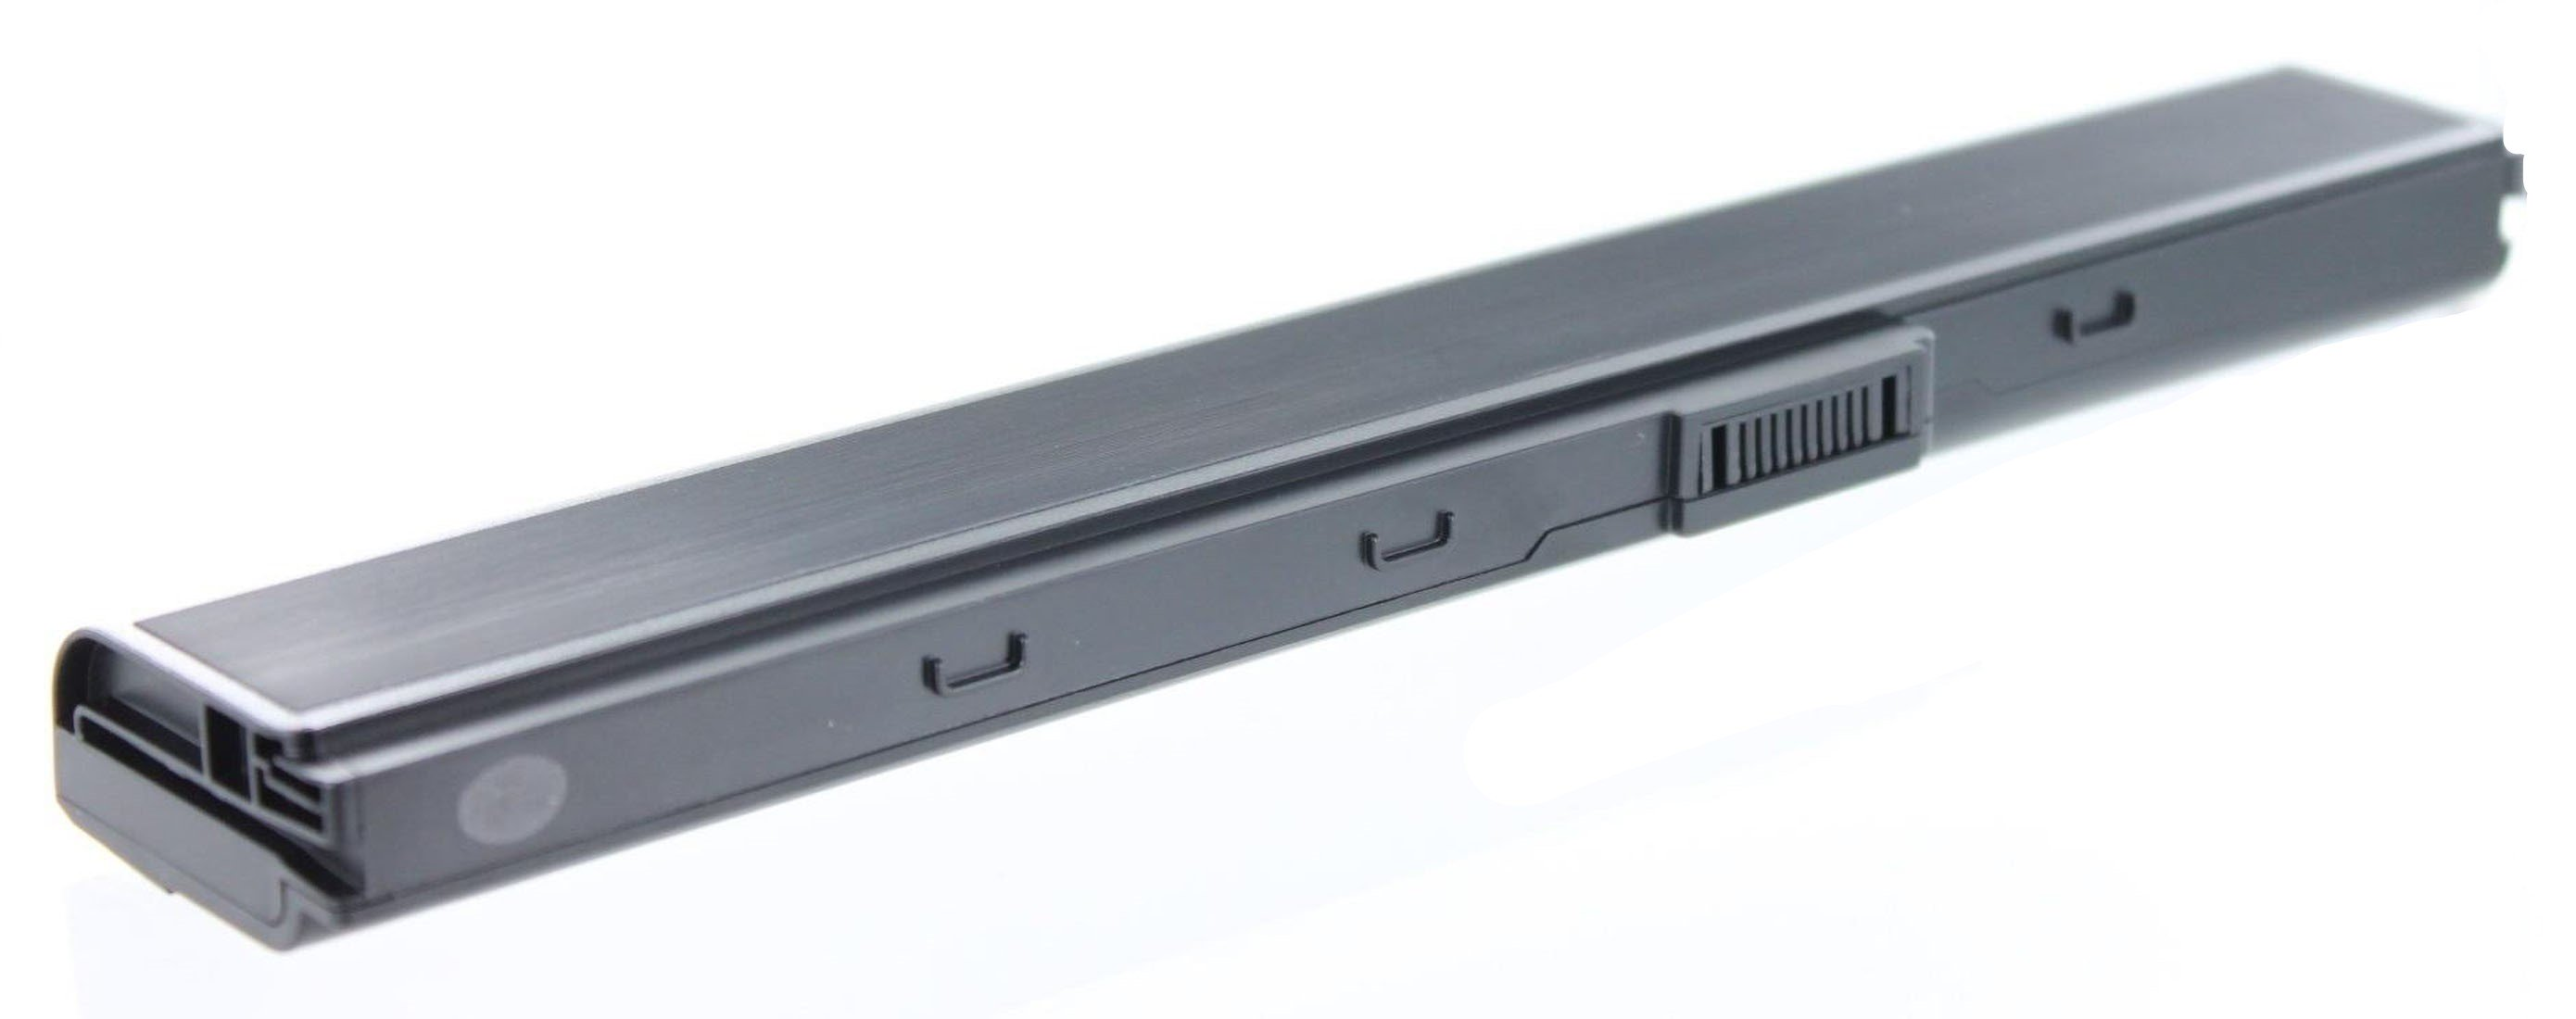 AGI Akku kompatibel mit Asus Notebookakku, mAh 52JU-SX116V Volt, Pro 4400 10.8 Li-Ion